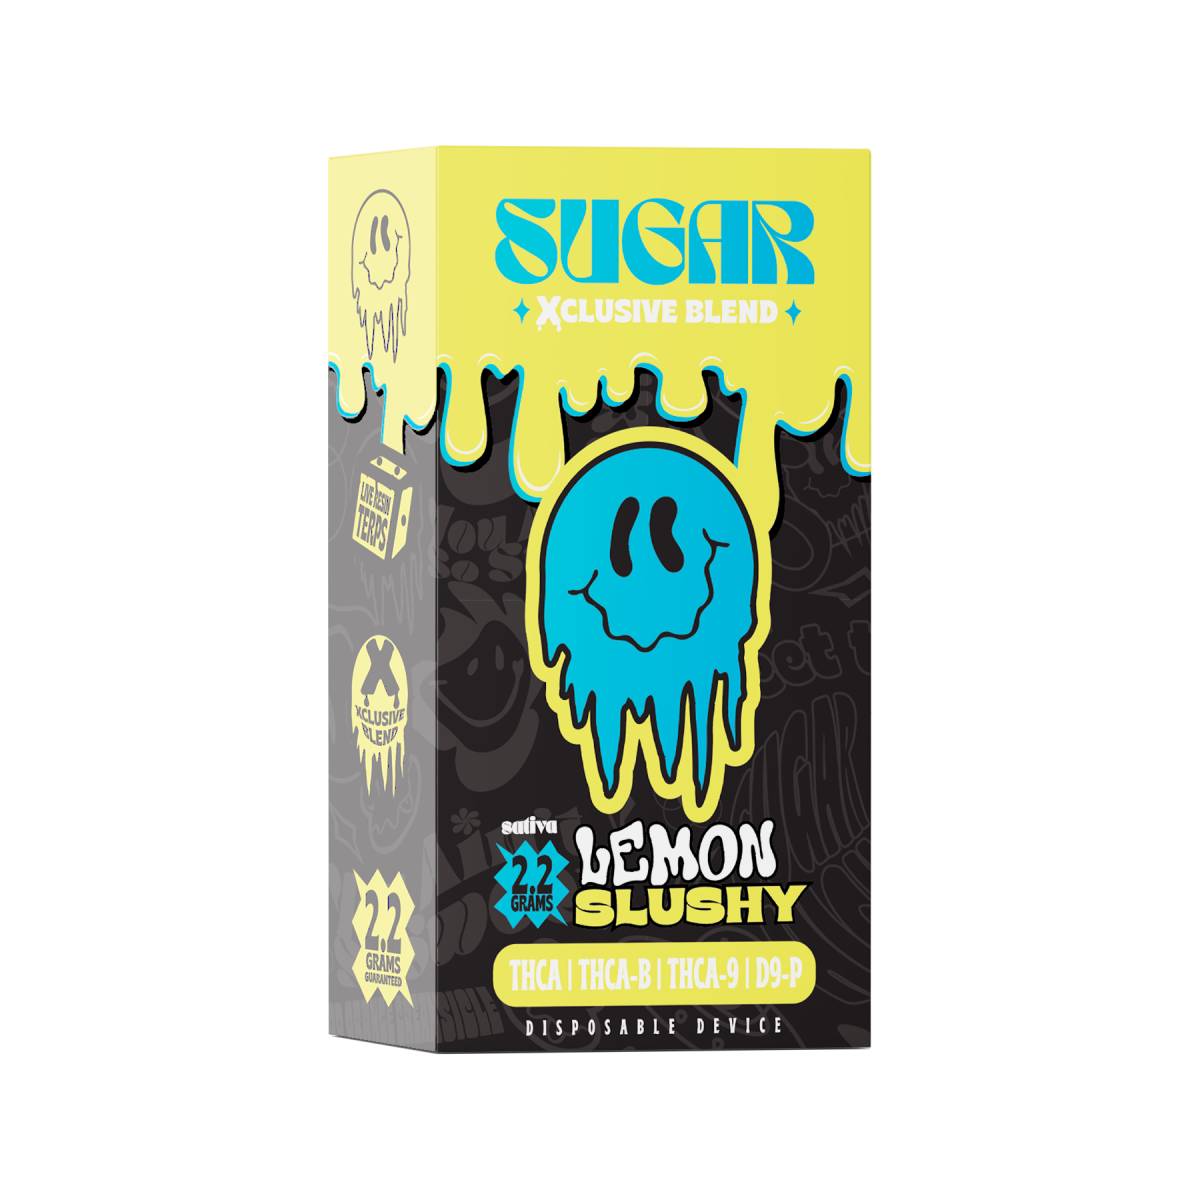 Trippy Sugar Xclusive Blend Disposable Vapes 2.2g Best Sales Price - Vape Pens